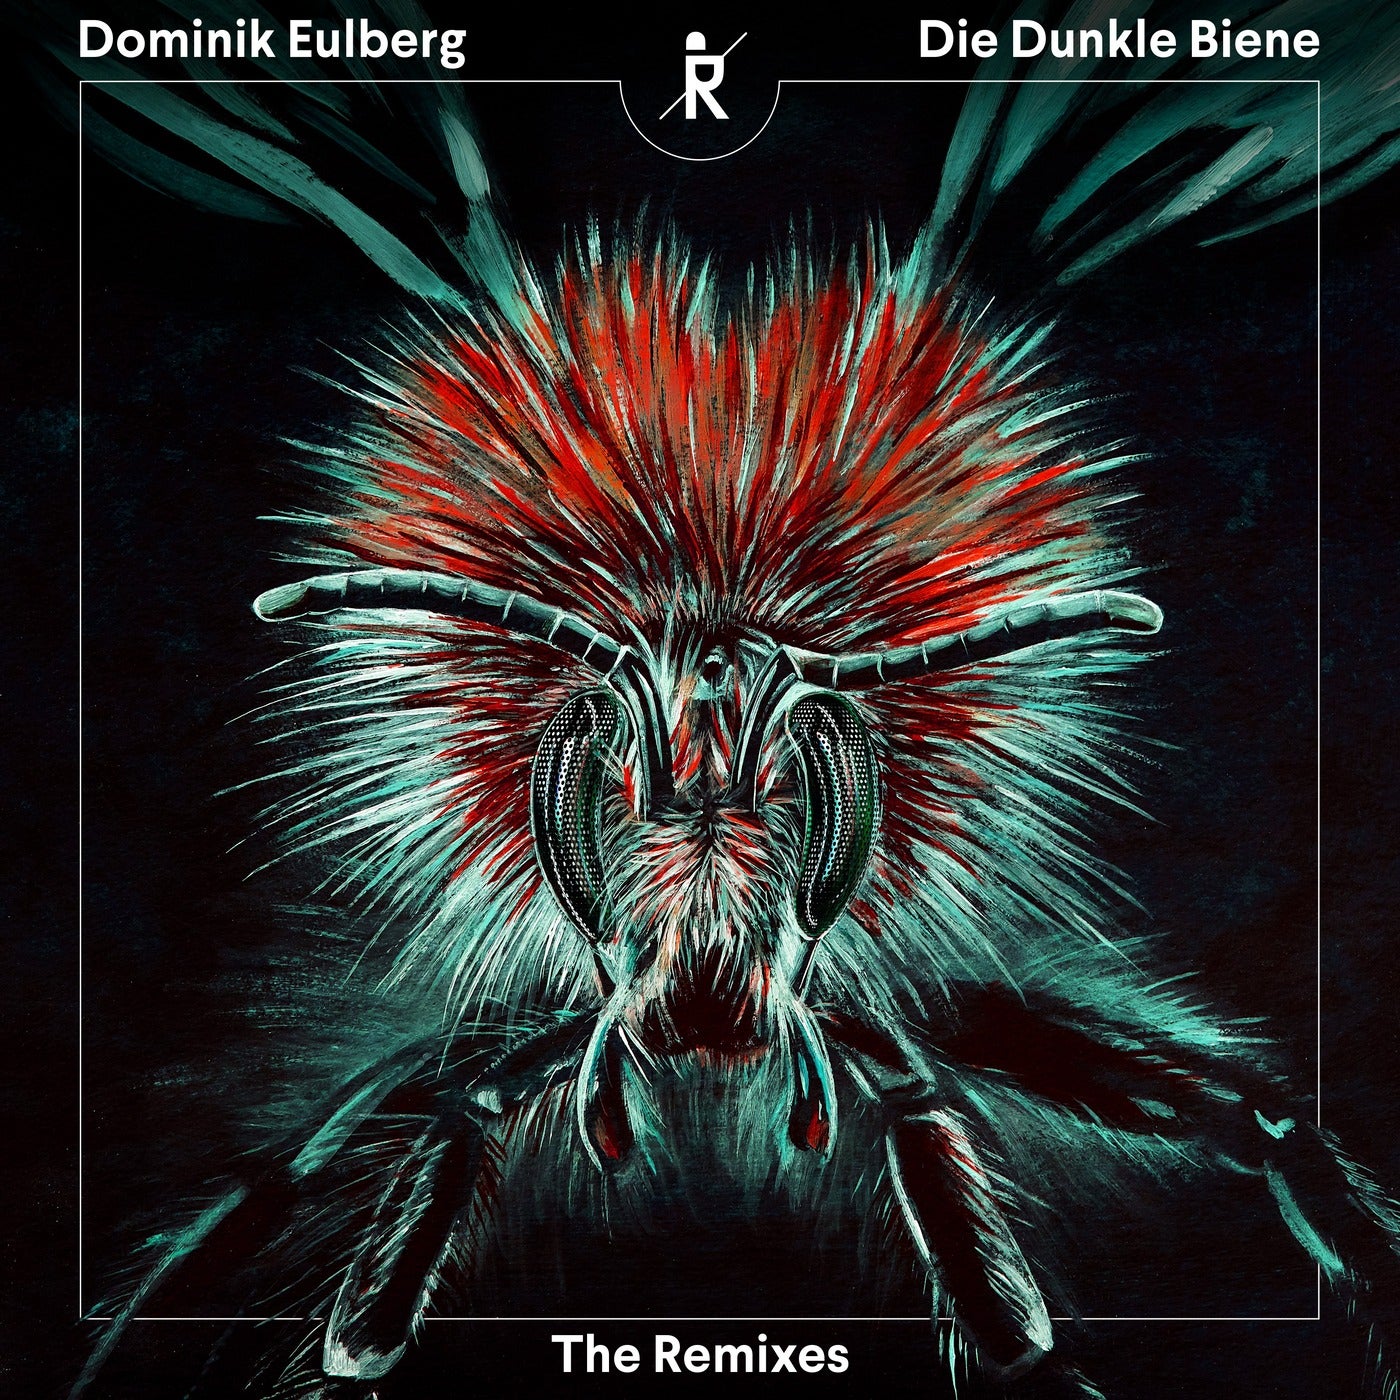 Die Dunkle Biene (The Remixes)